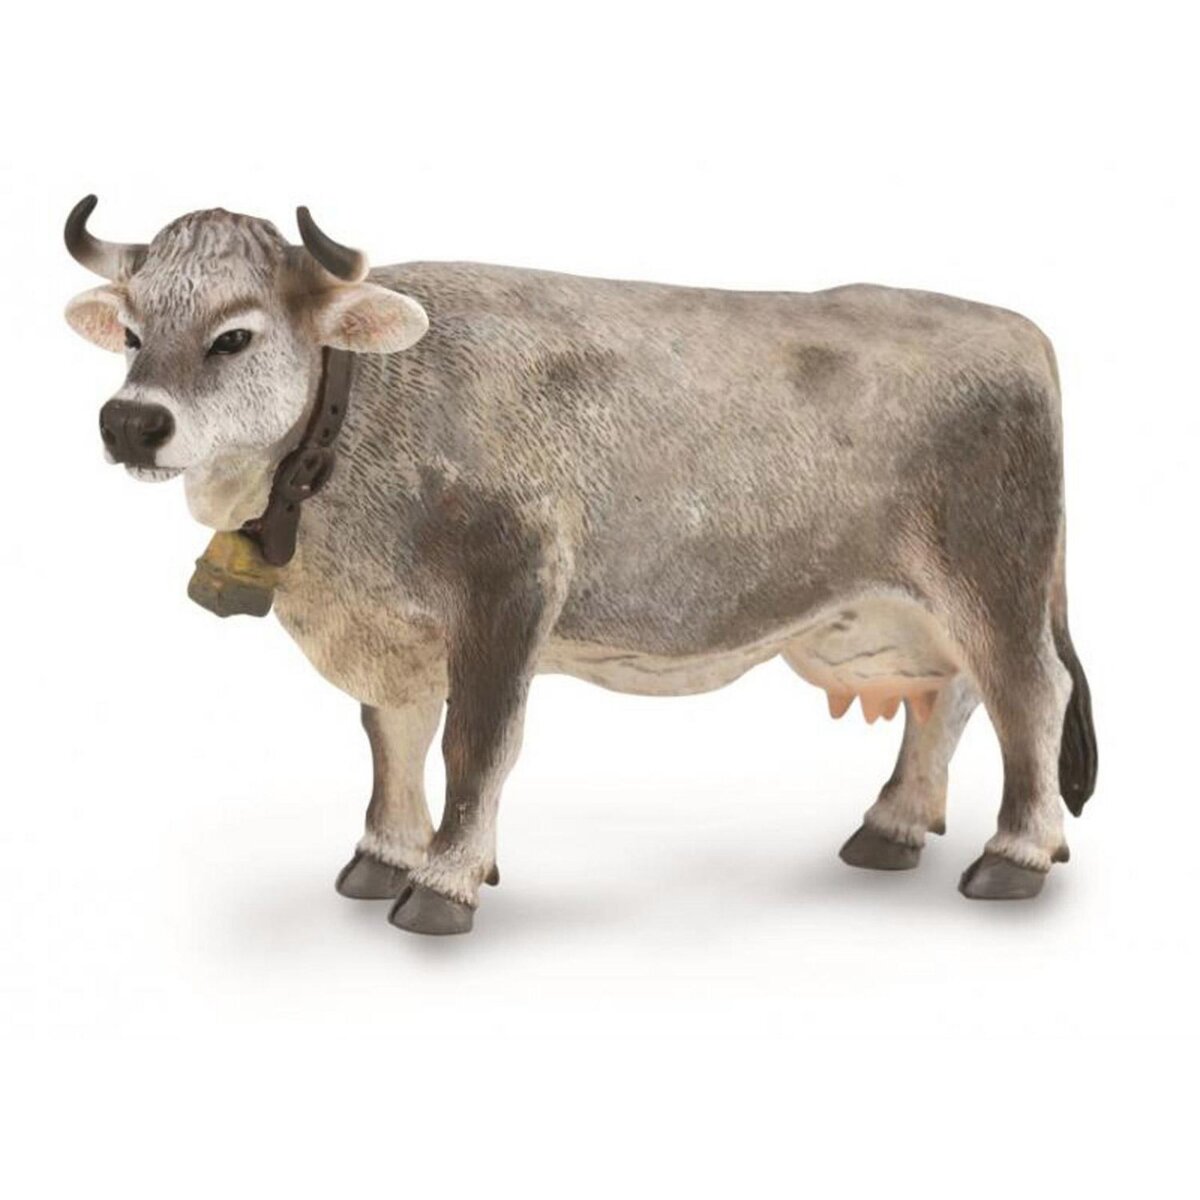 Jouet Vache des Alpes Lara Animaux et figurines - AGZ000019114